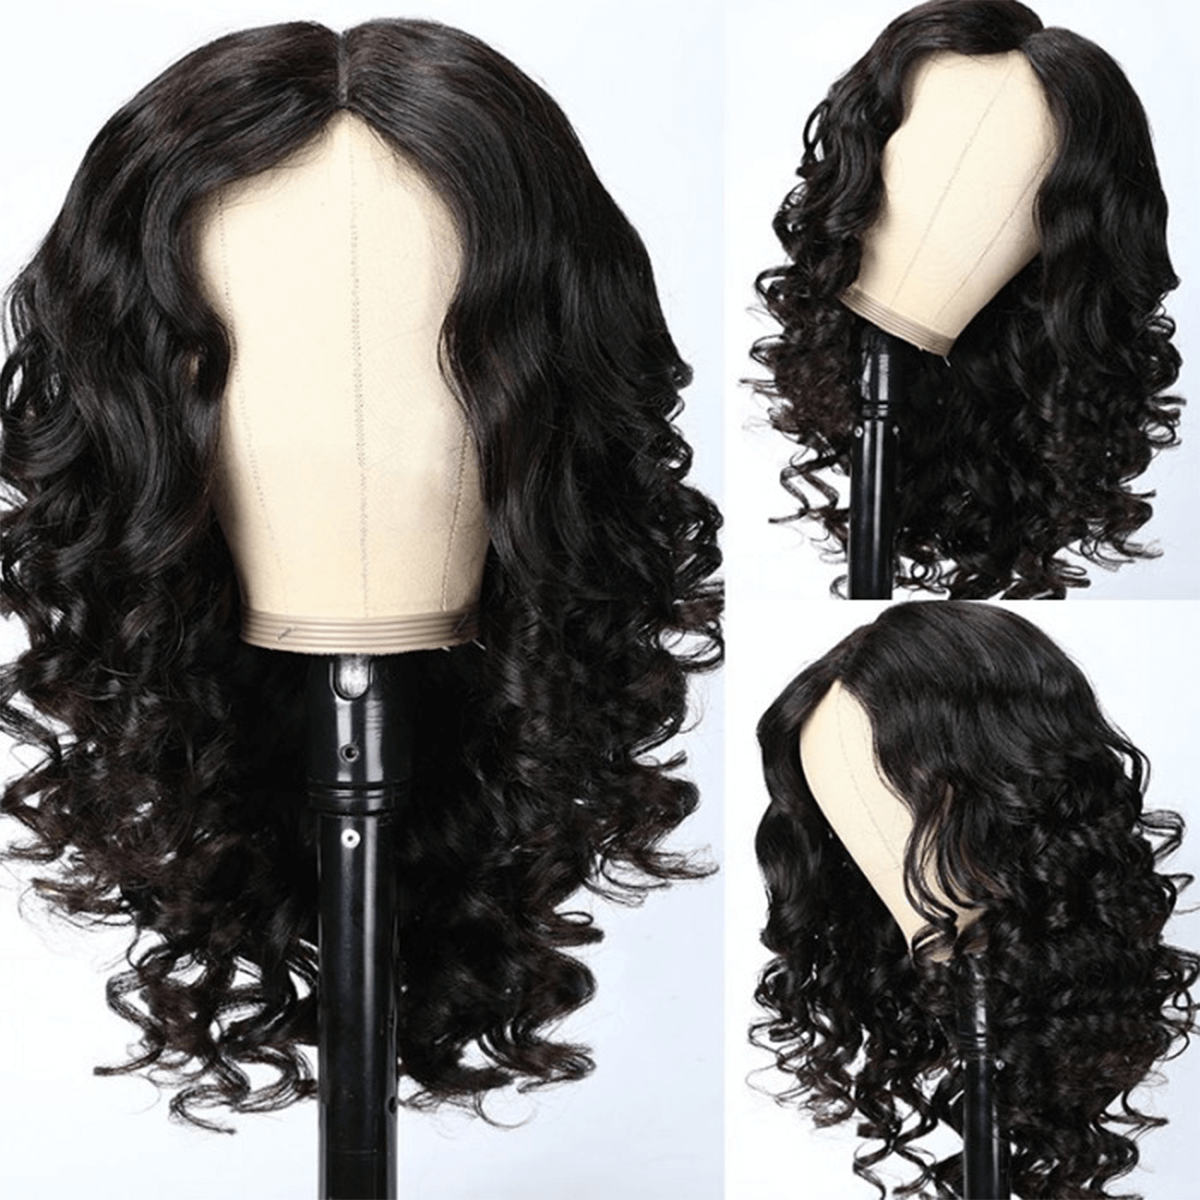 barrel curls v part wig (2)